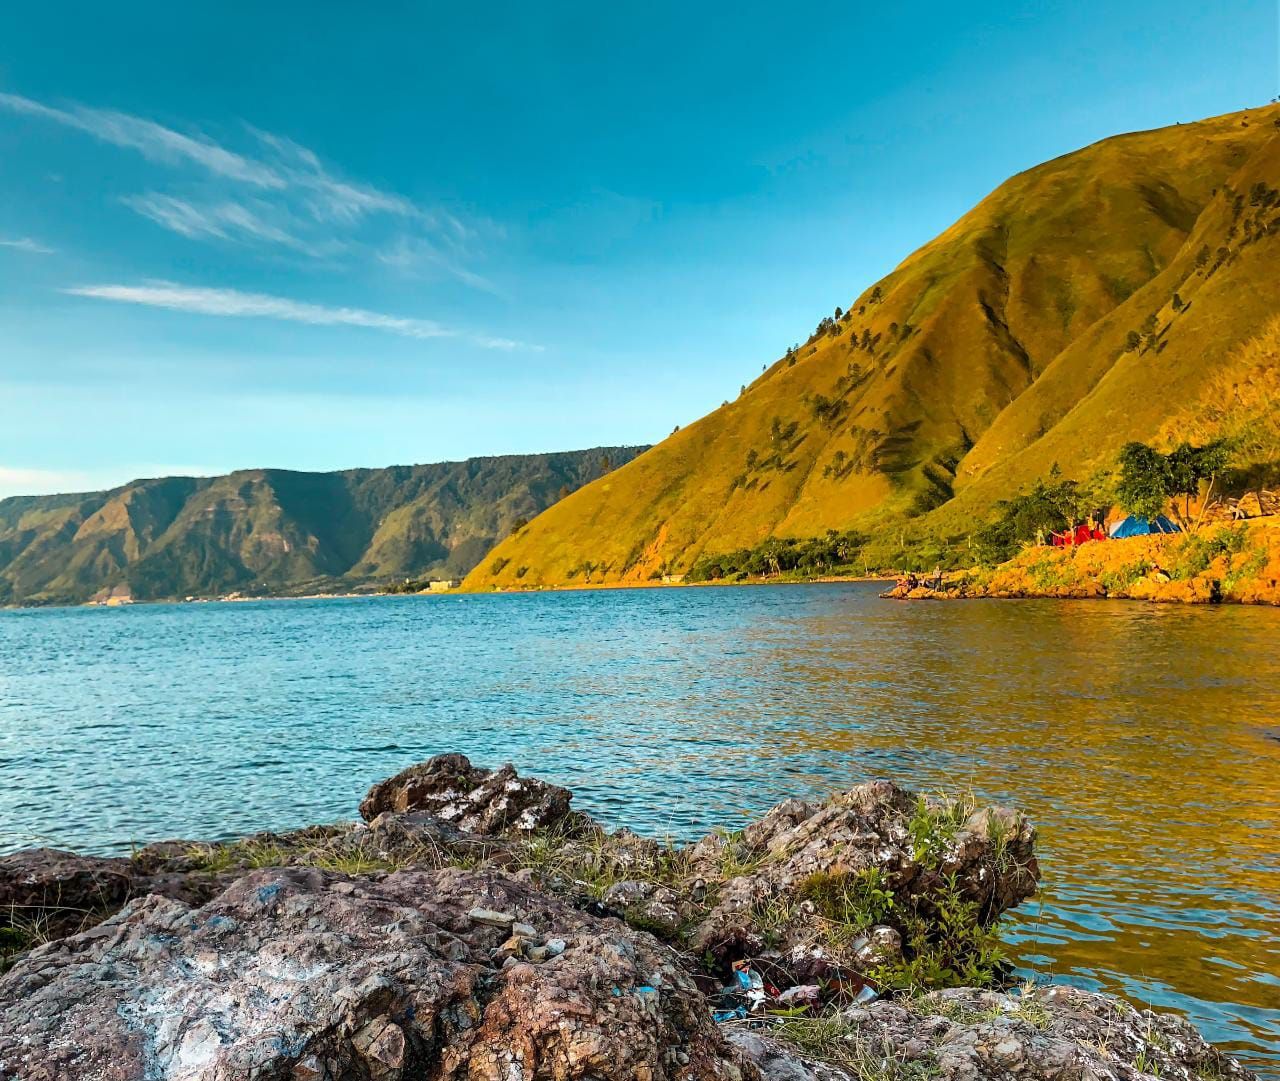 Pesona keindahan desa wisata Danau Toba / Bagoes Ilhamy / Unsplash